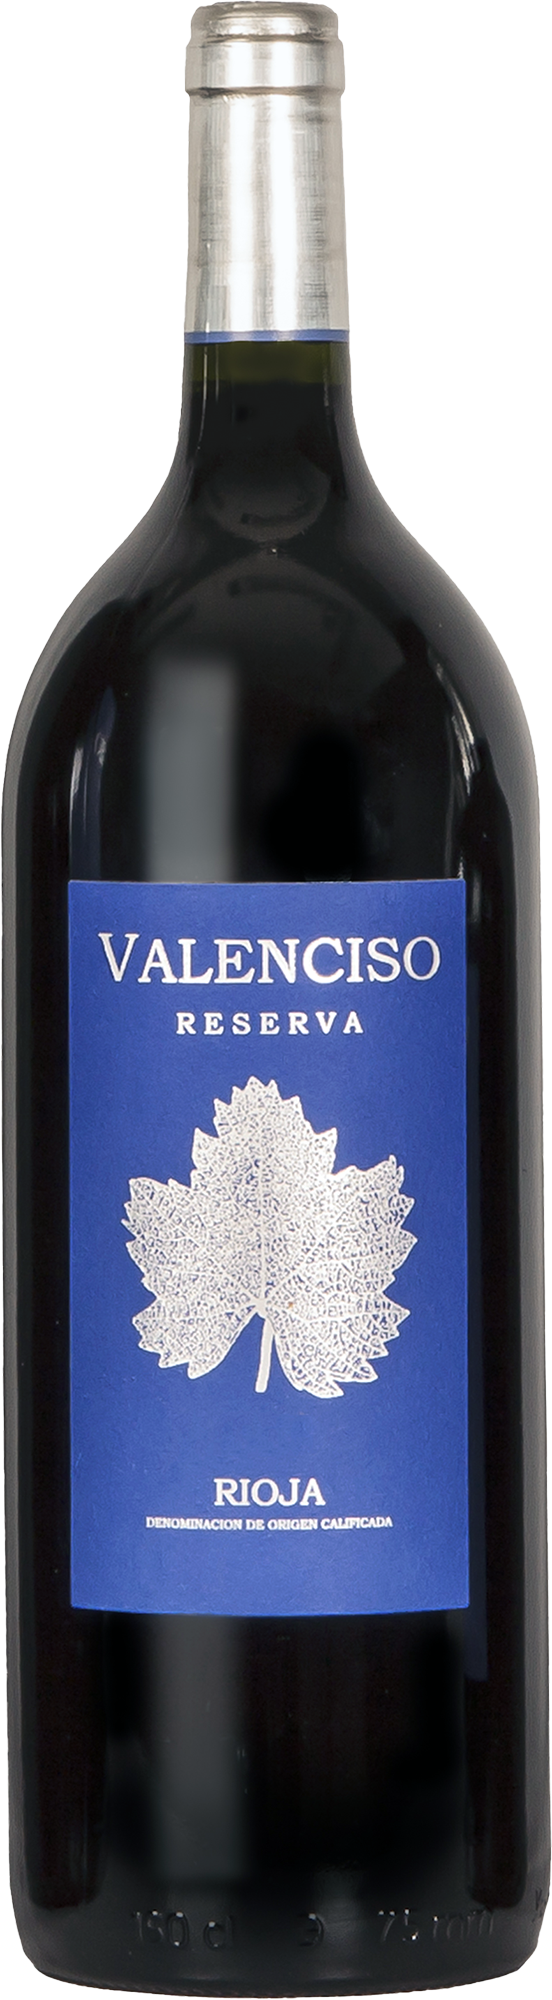 Valenciso Rioja Reserva 2015